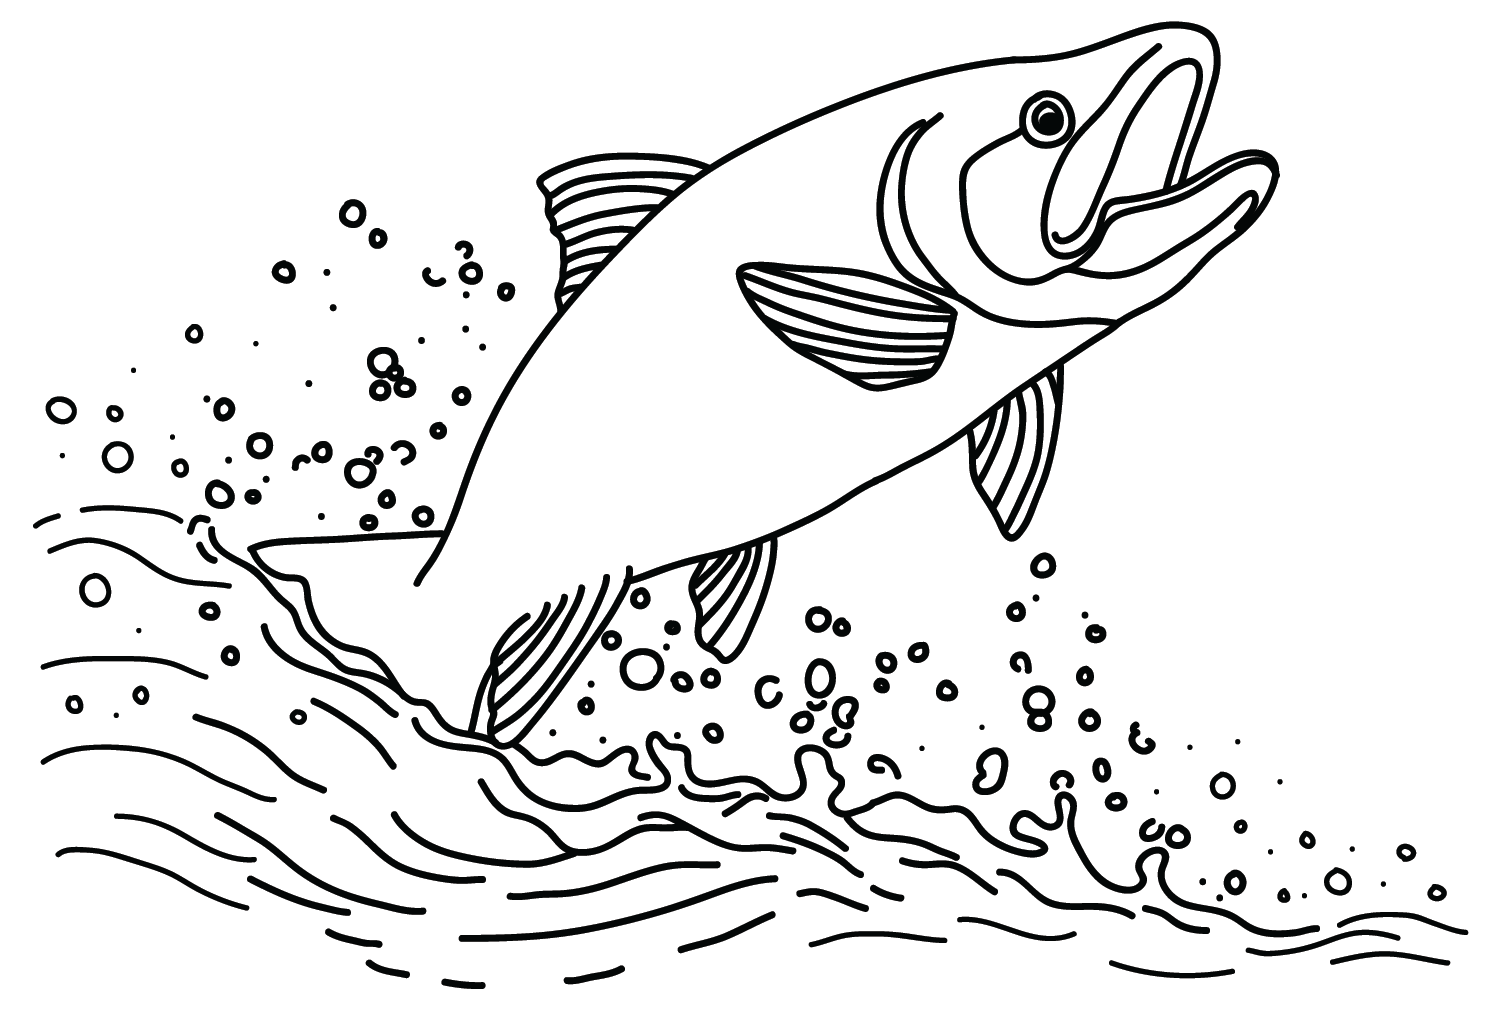 Zalm op het water van Salmon